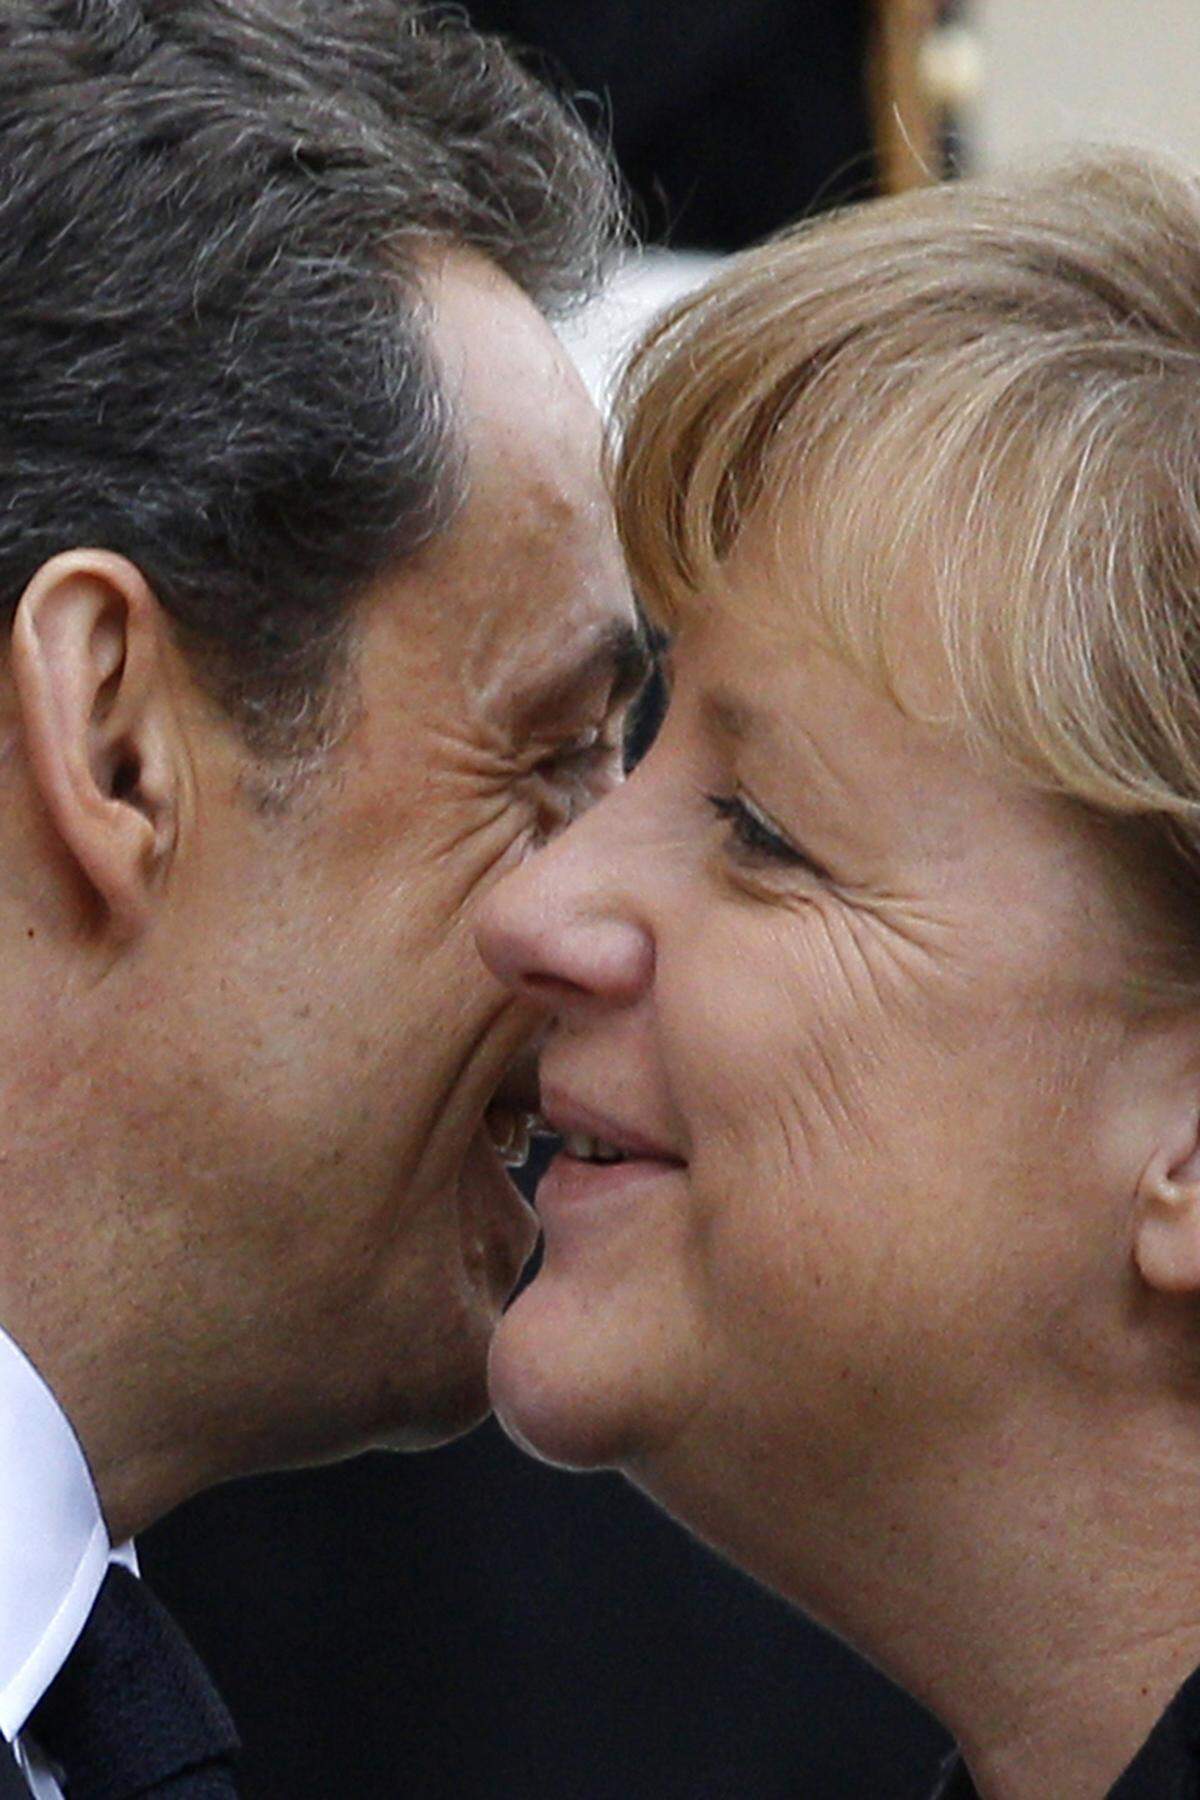 Gegenüber dem früheren französischen Präsidenten Nicolas Sarkozy hat Merkel hingegen keine Berührungsängste. Von vielen wurden die beiden nur noch "Merkozy" genannt. Im Bild ein Begrüßungsküsschen am 19. März 2011 bei einem Libyen-Gipfel in Paris.